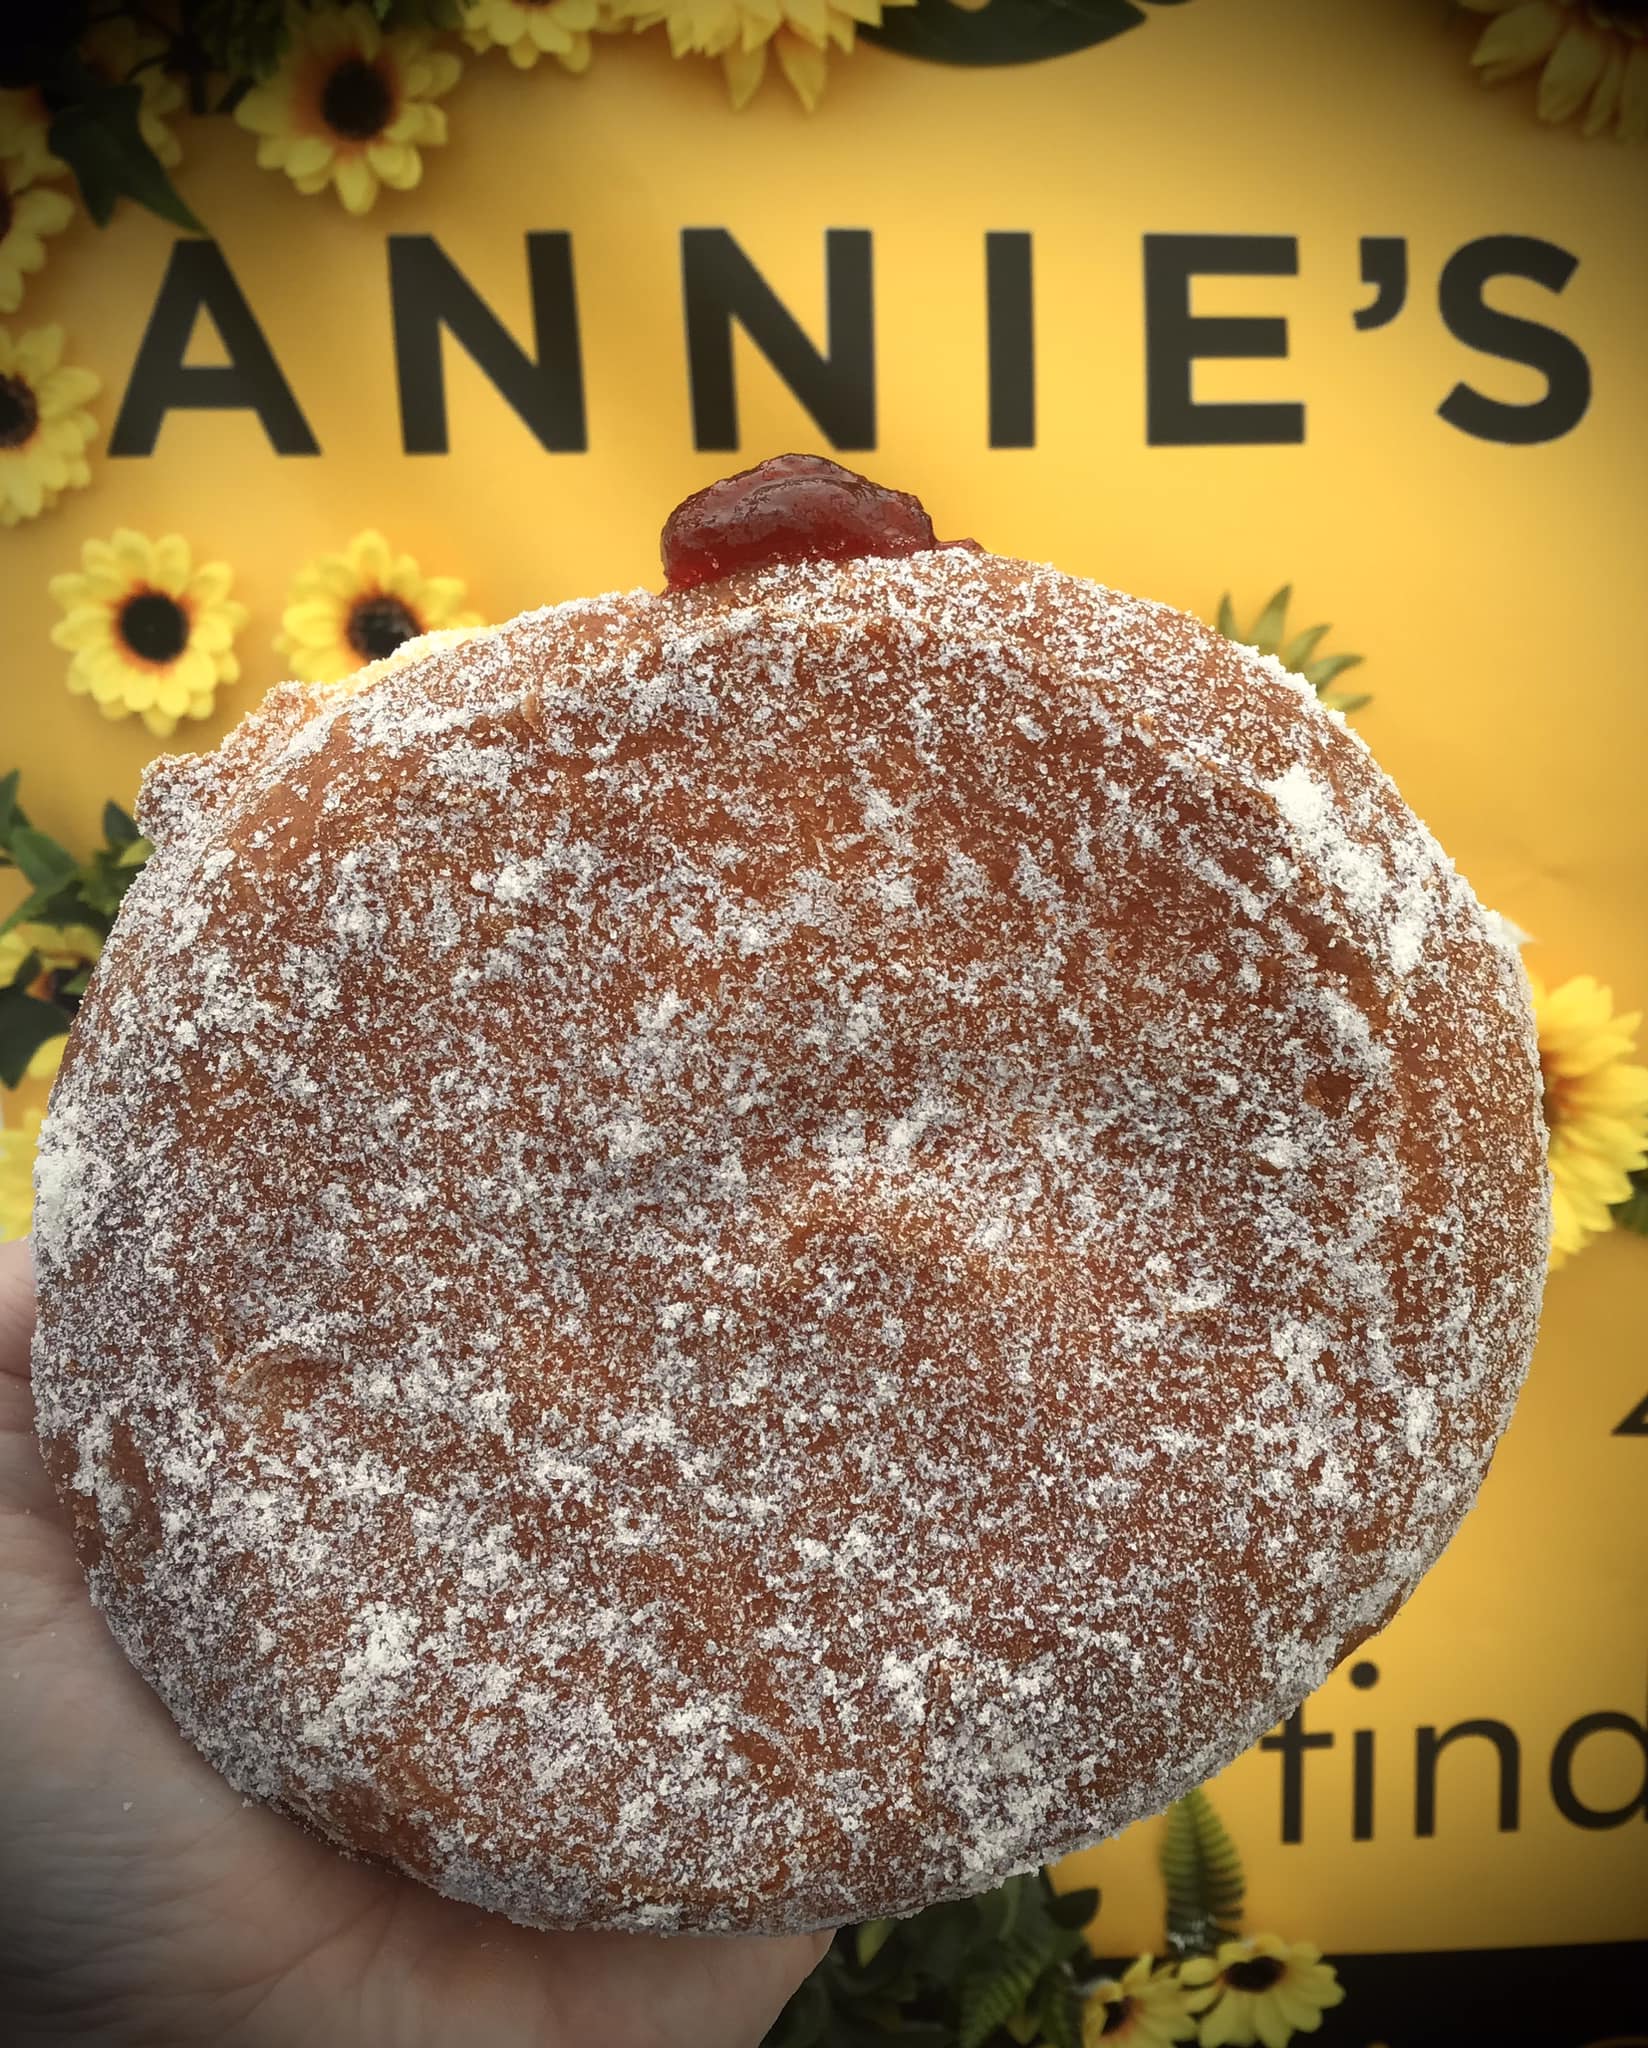 Giant Doughnut Annies